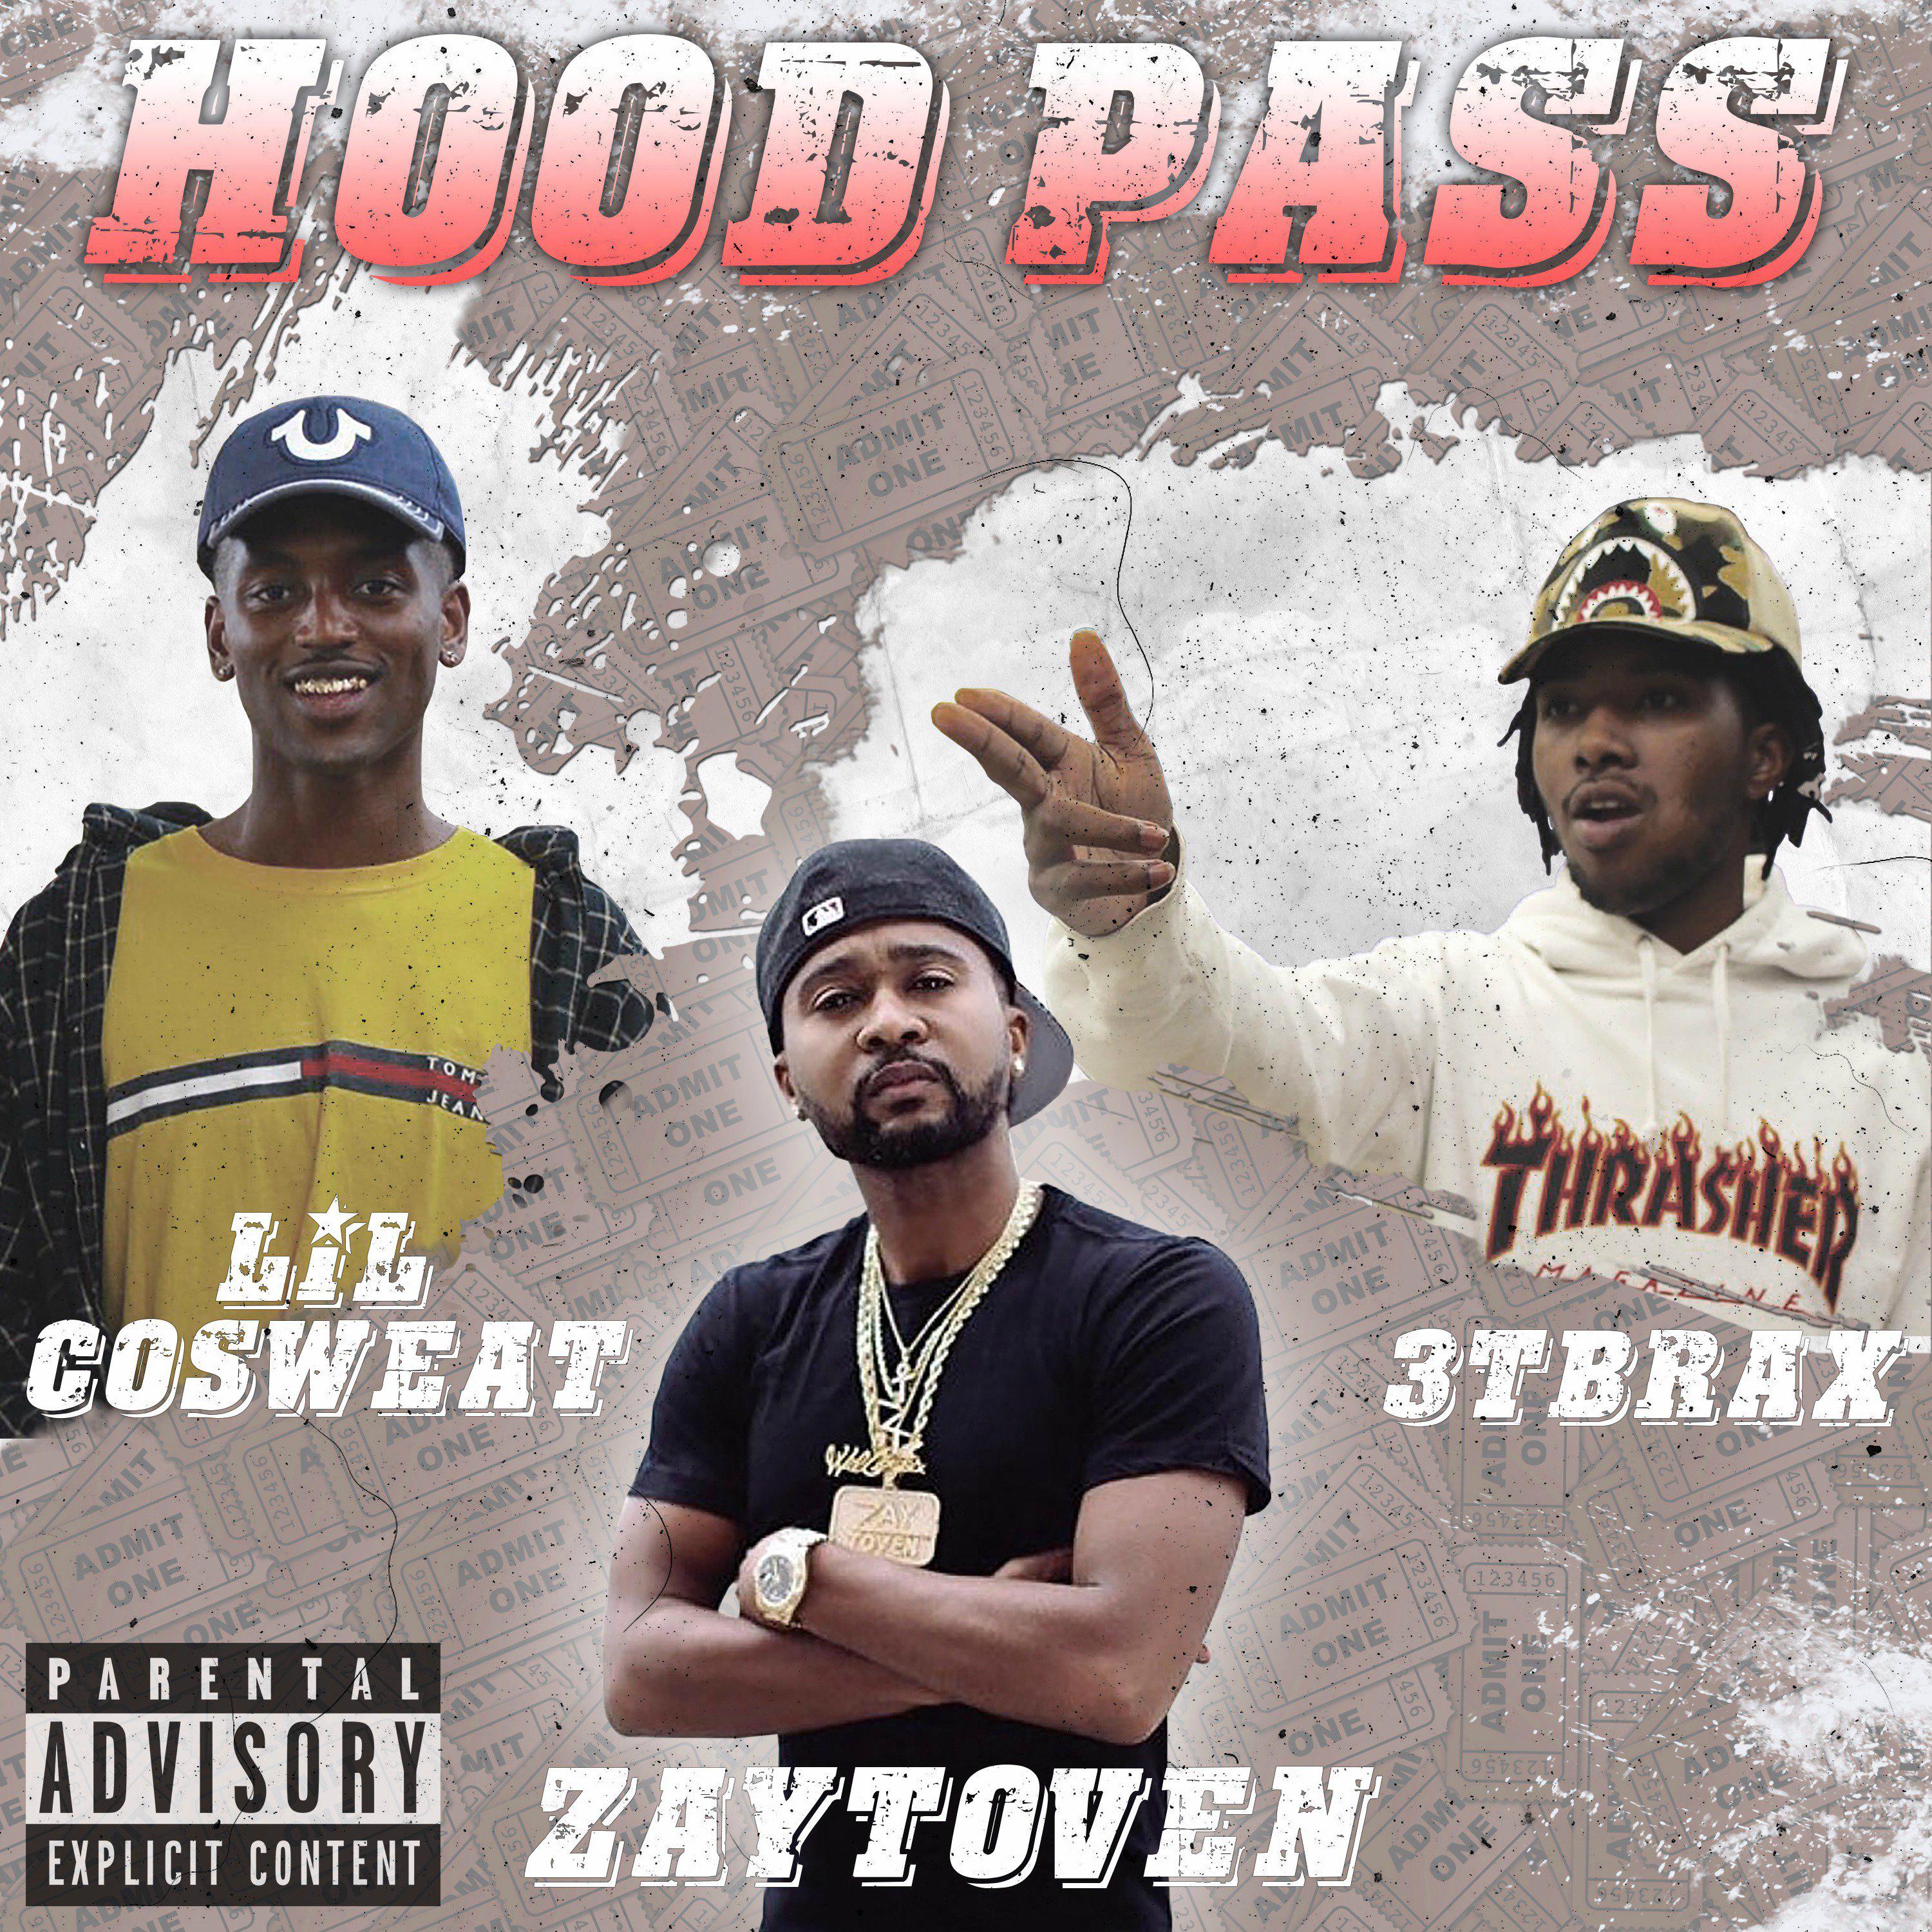 Hood Pass